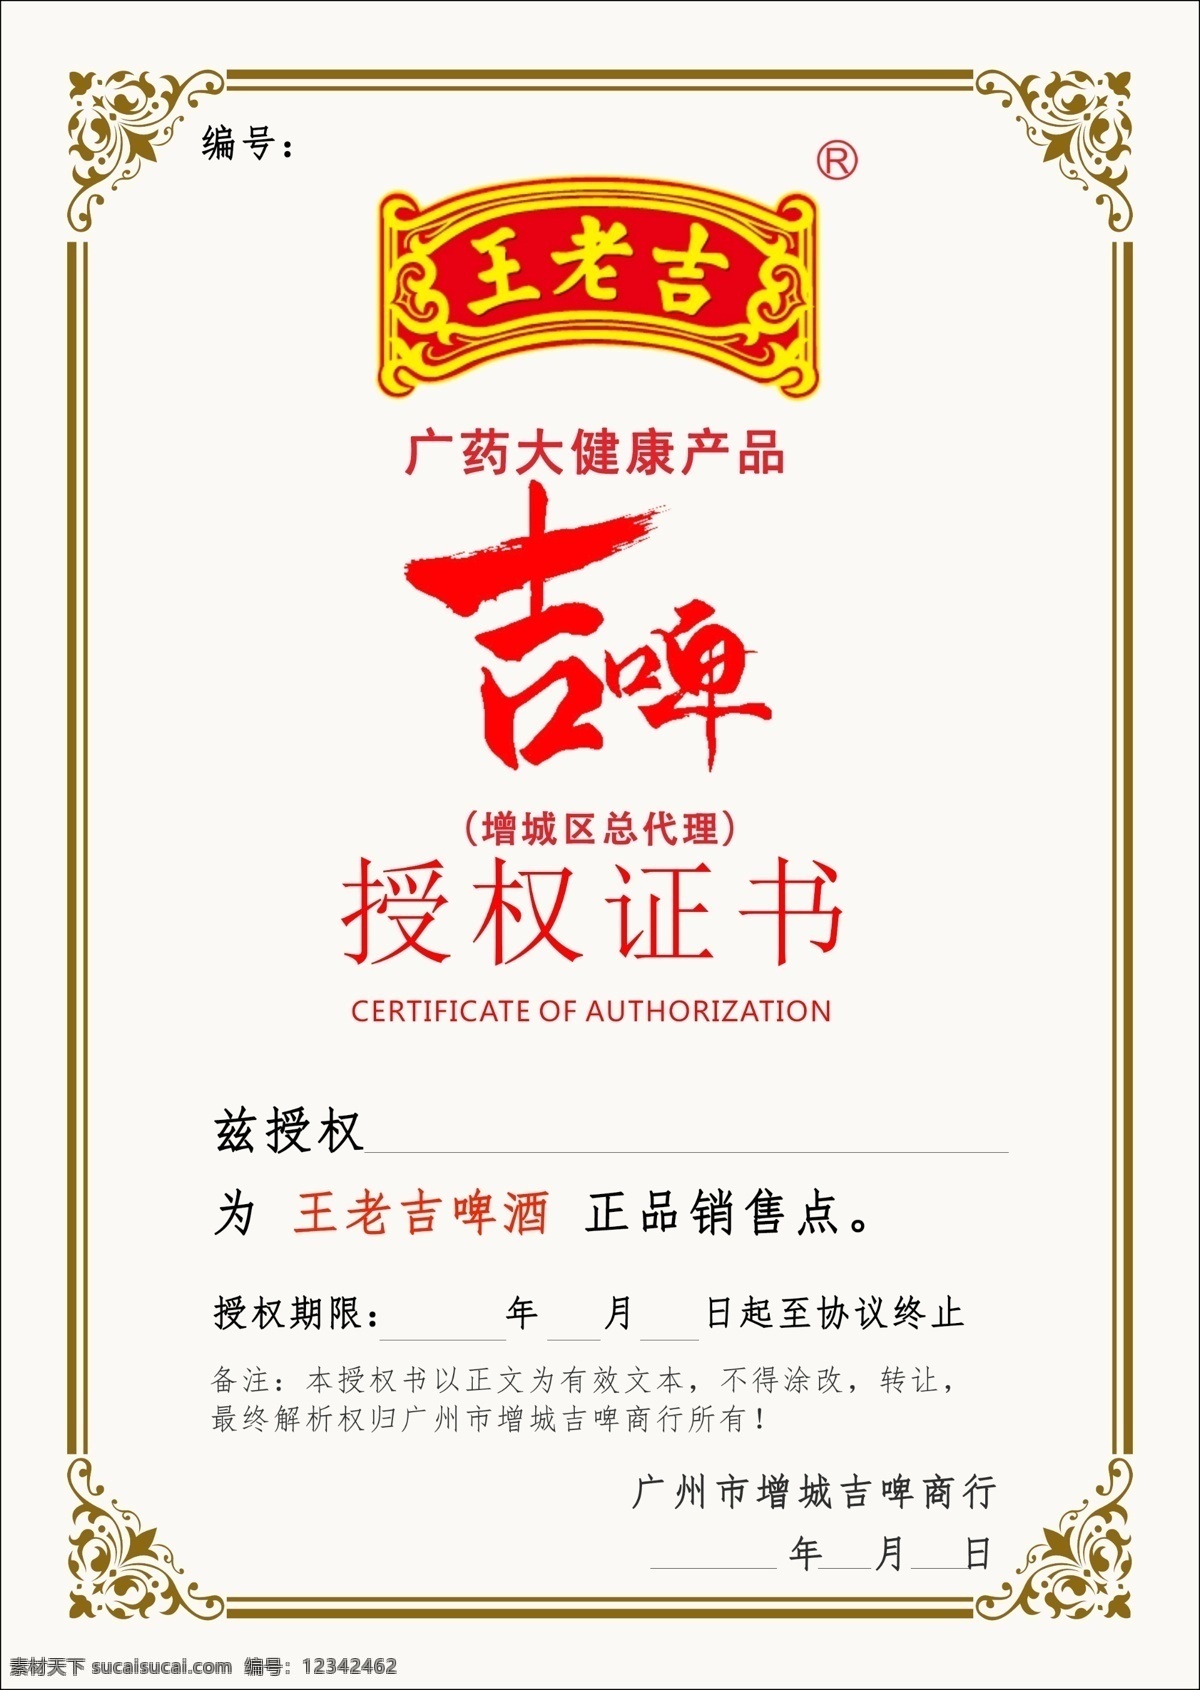 王老 吉 啤 授权 证书 王老吉 吉啤酒 授权证书 增城吉啤加盟 王老吉啤酒 加盟 分层